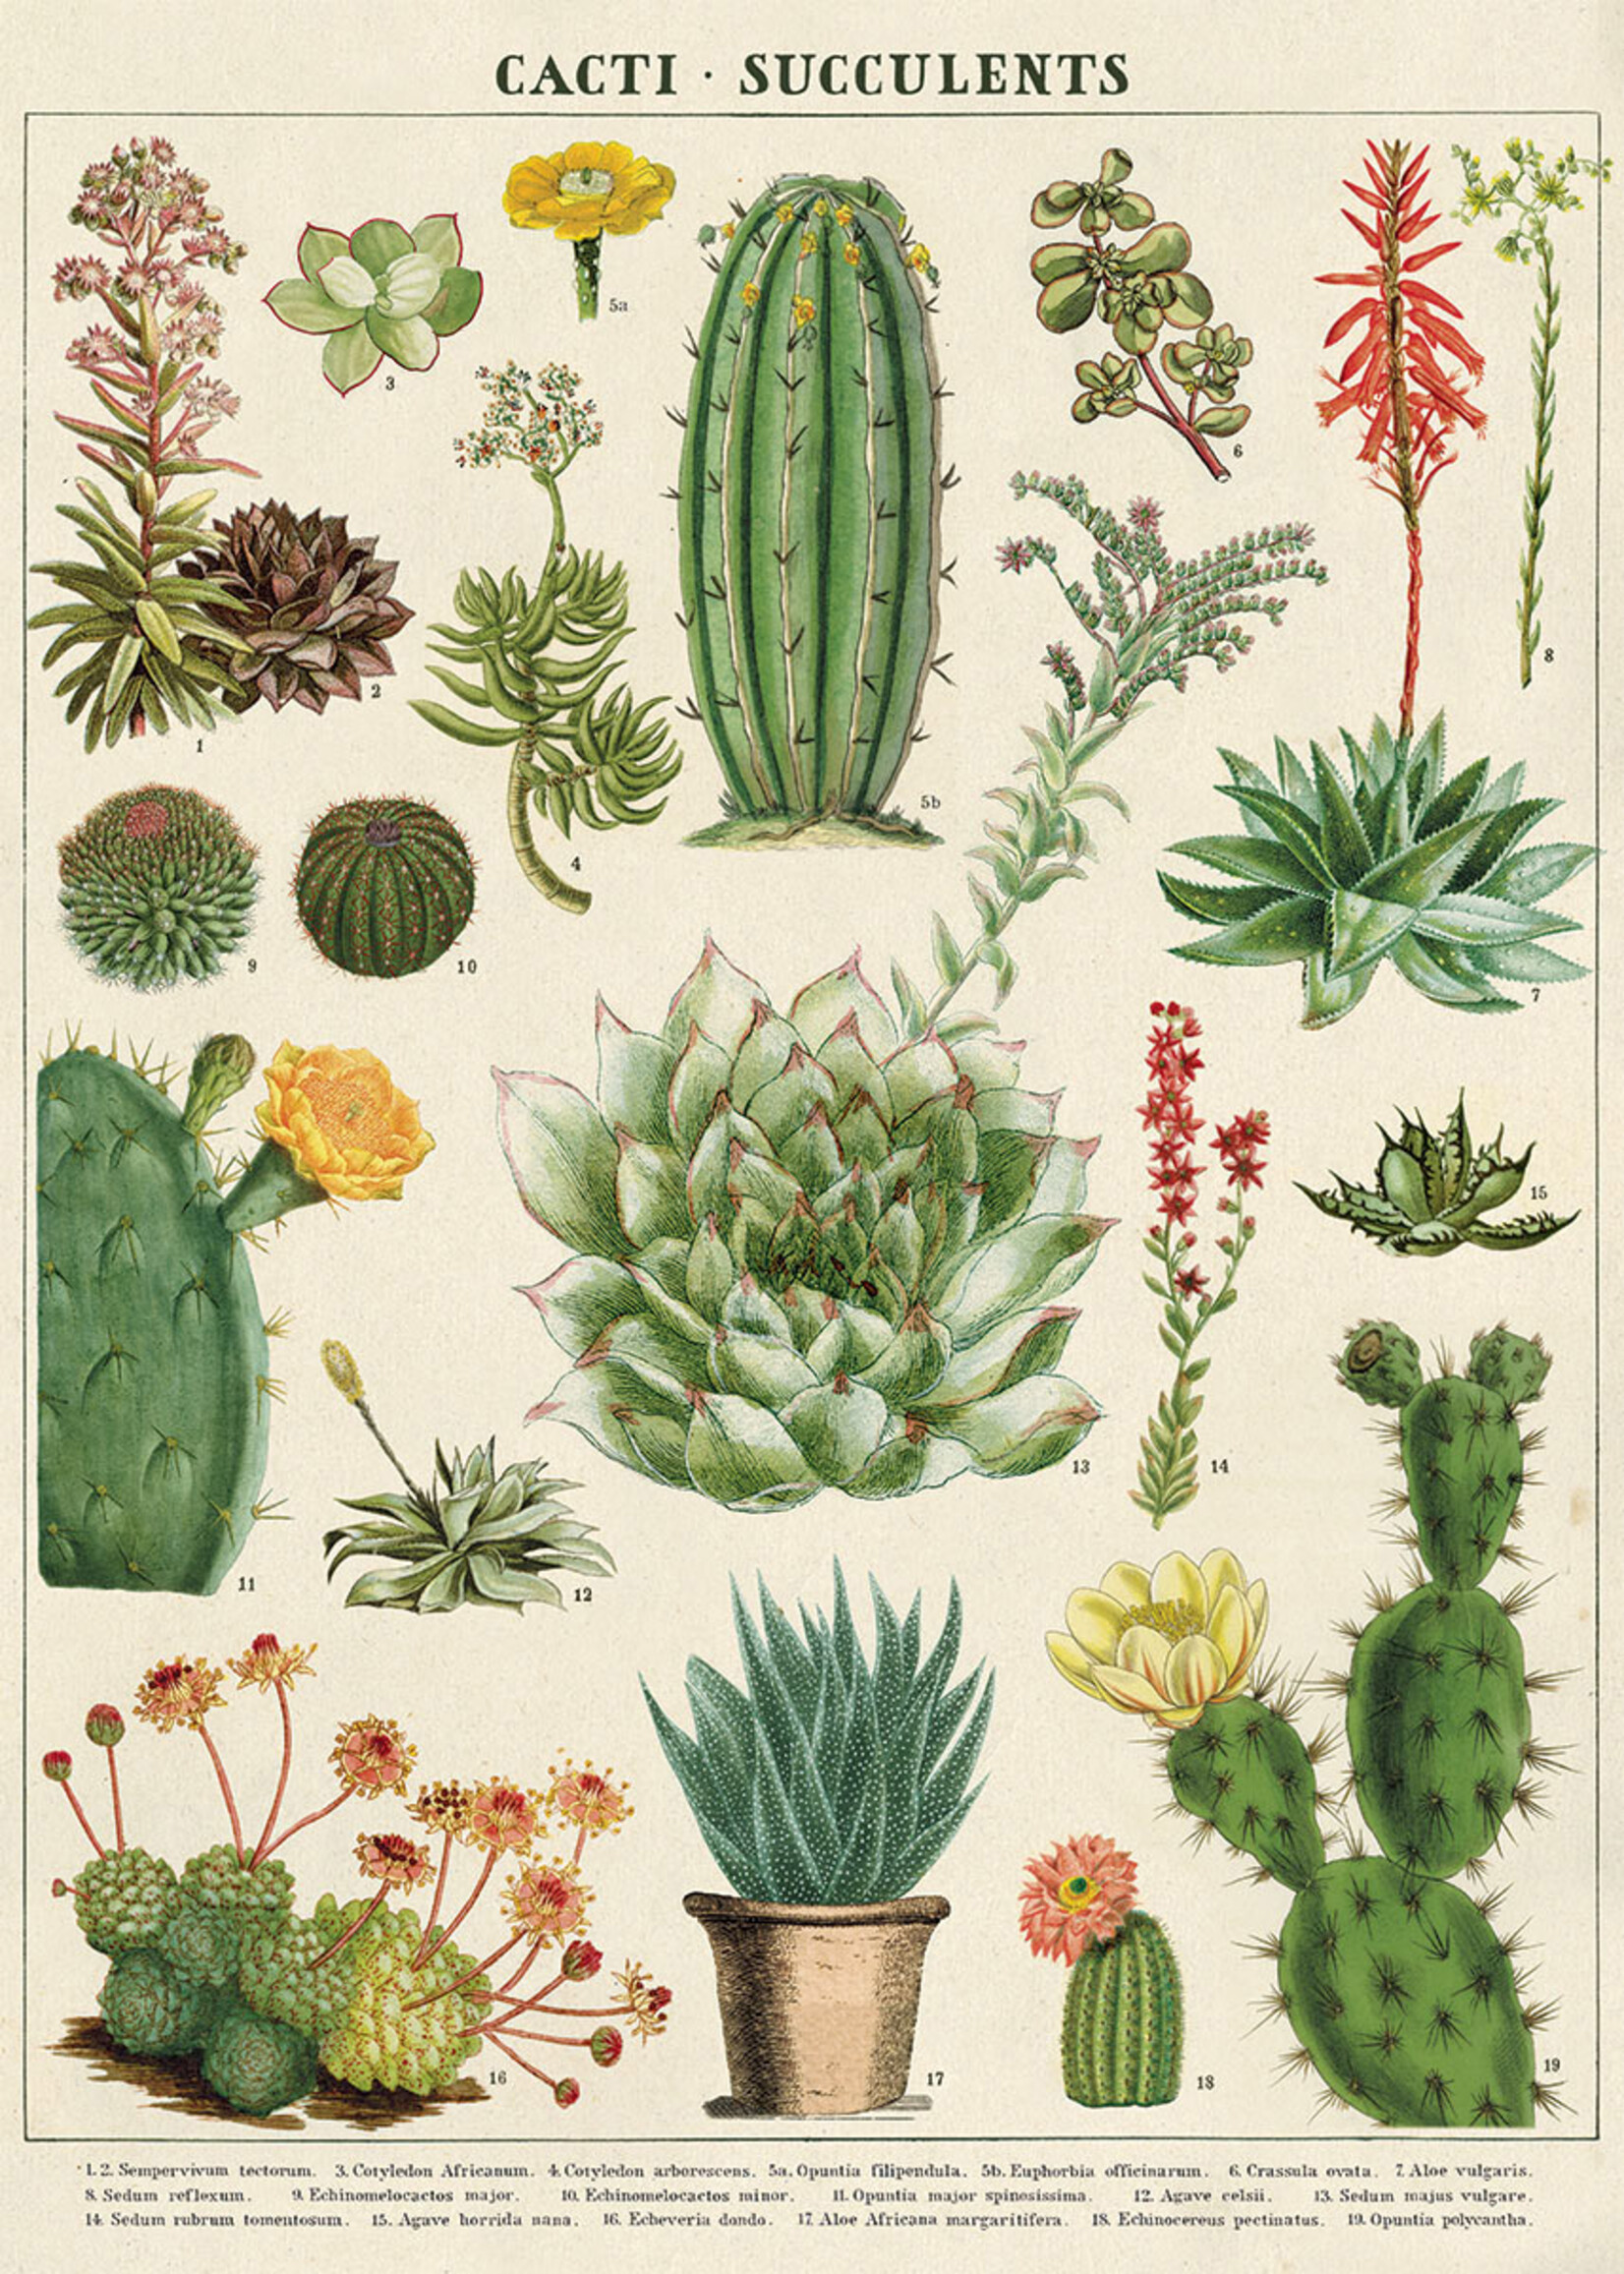 Poster/Wrap Cactus & Succulents